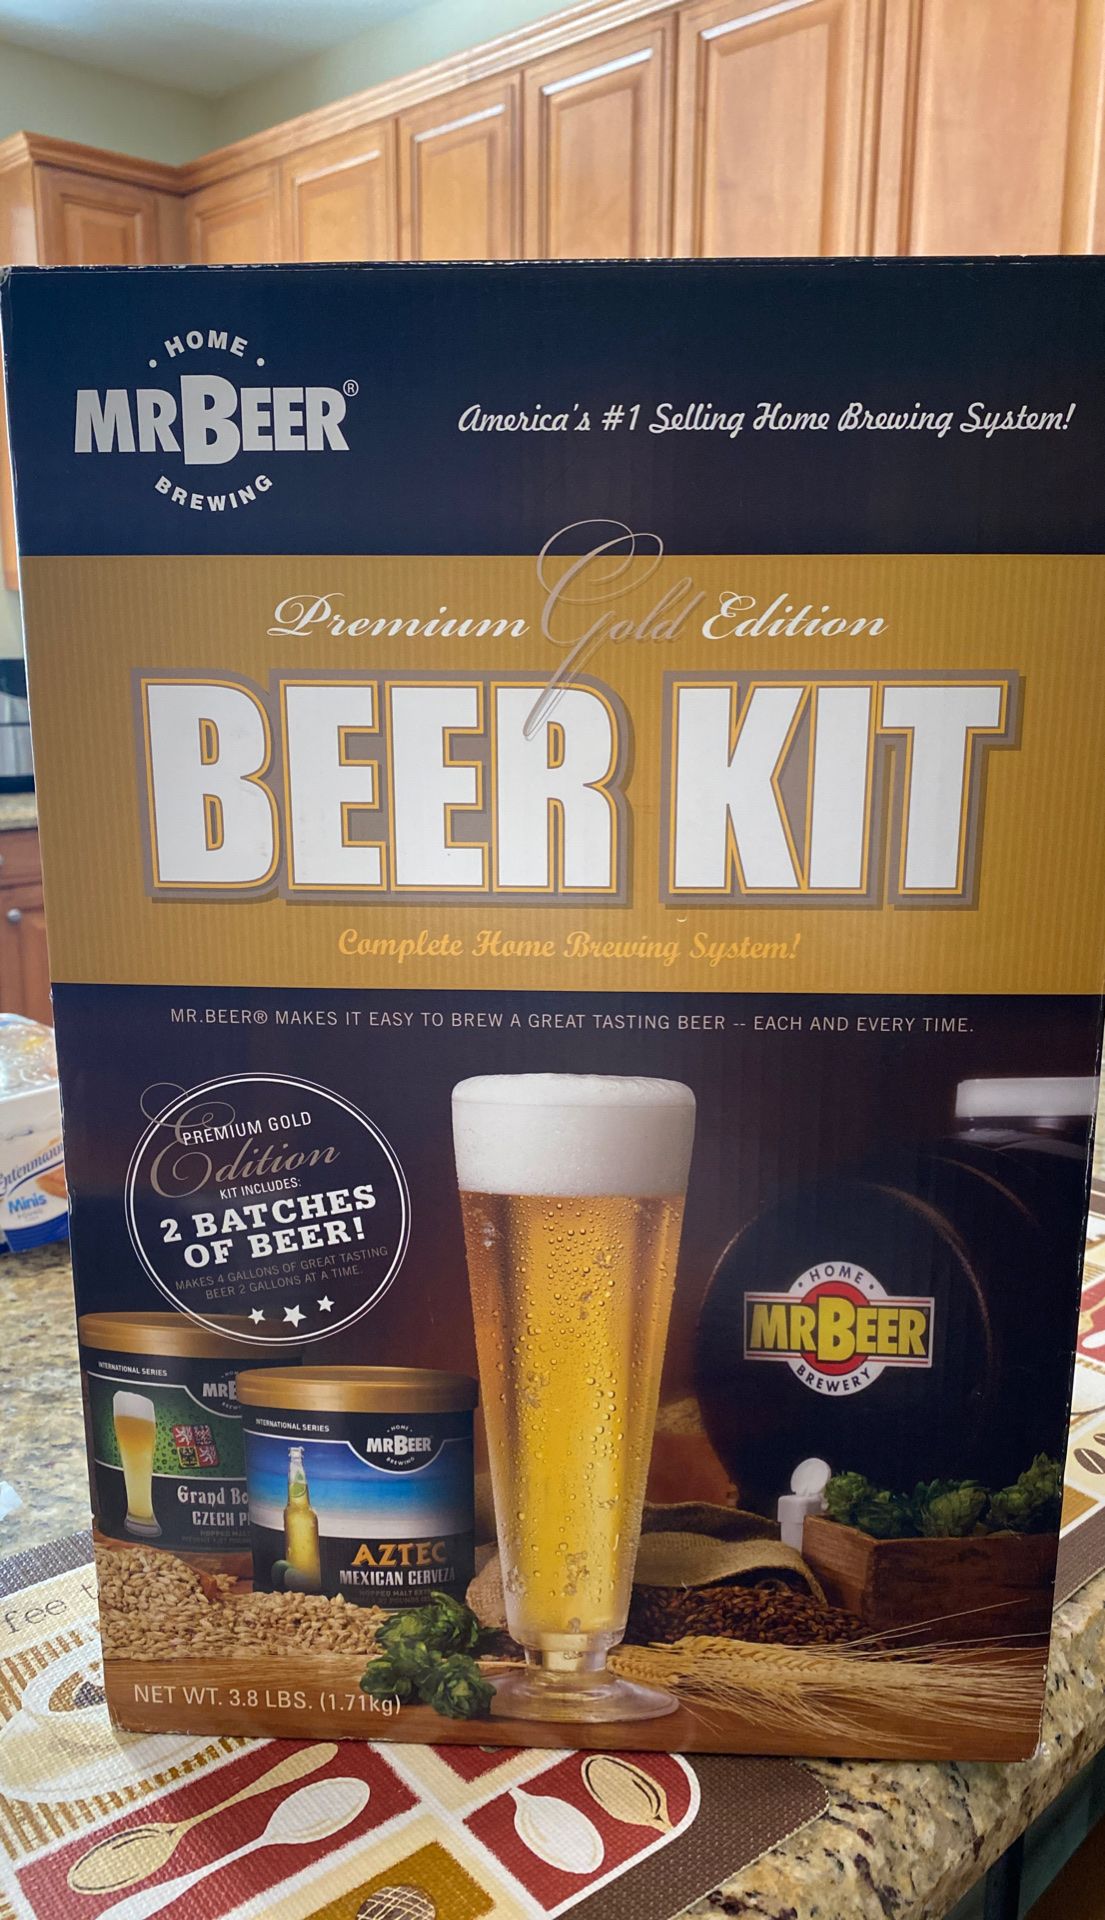 Beer Kit